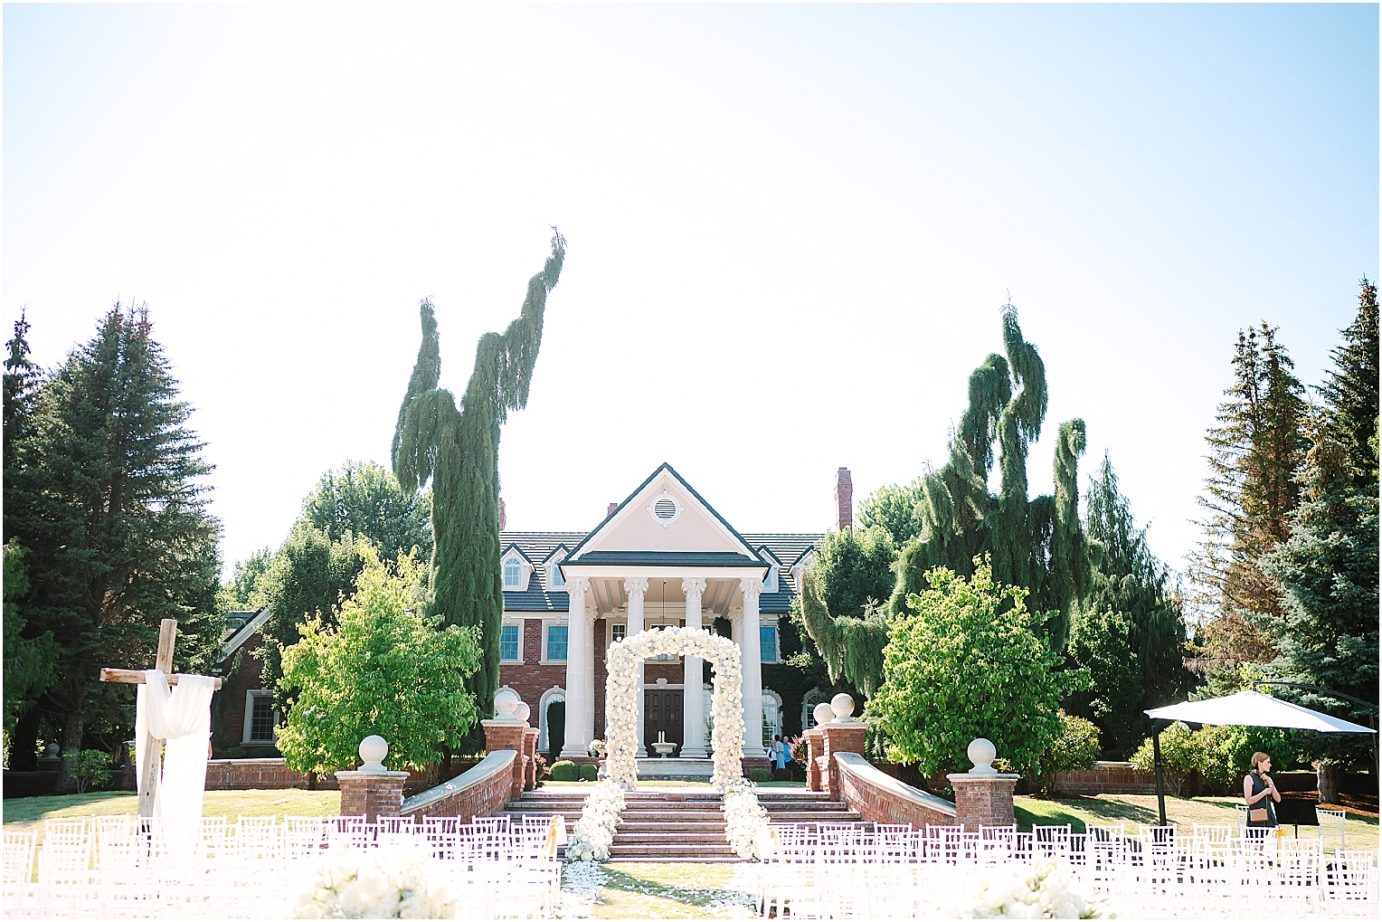 Disney-inspired Oakshire Estate Wedding ceremony details